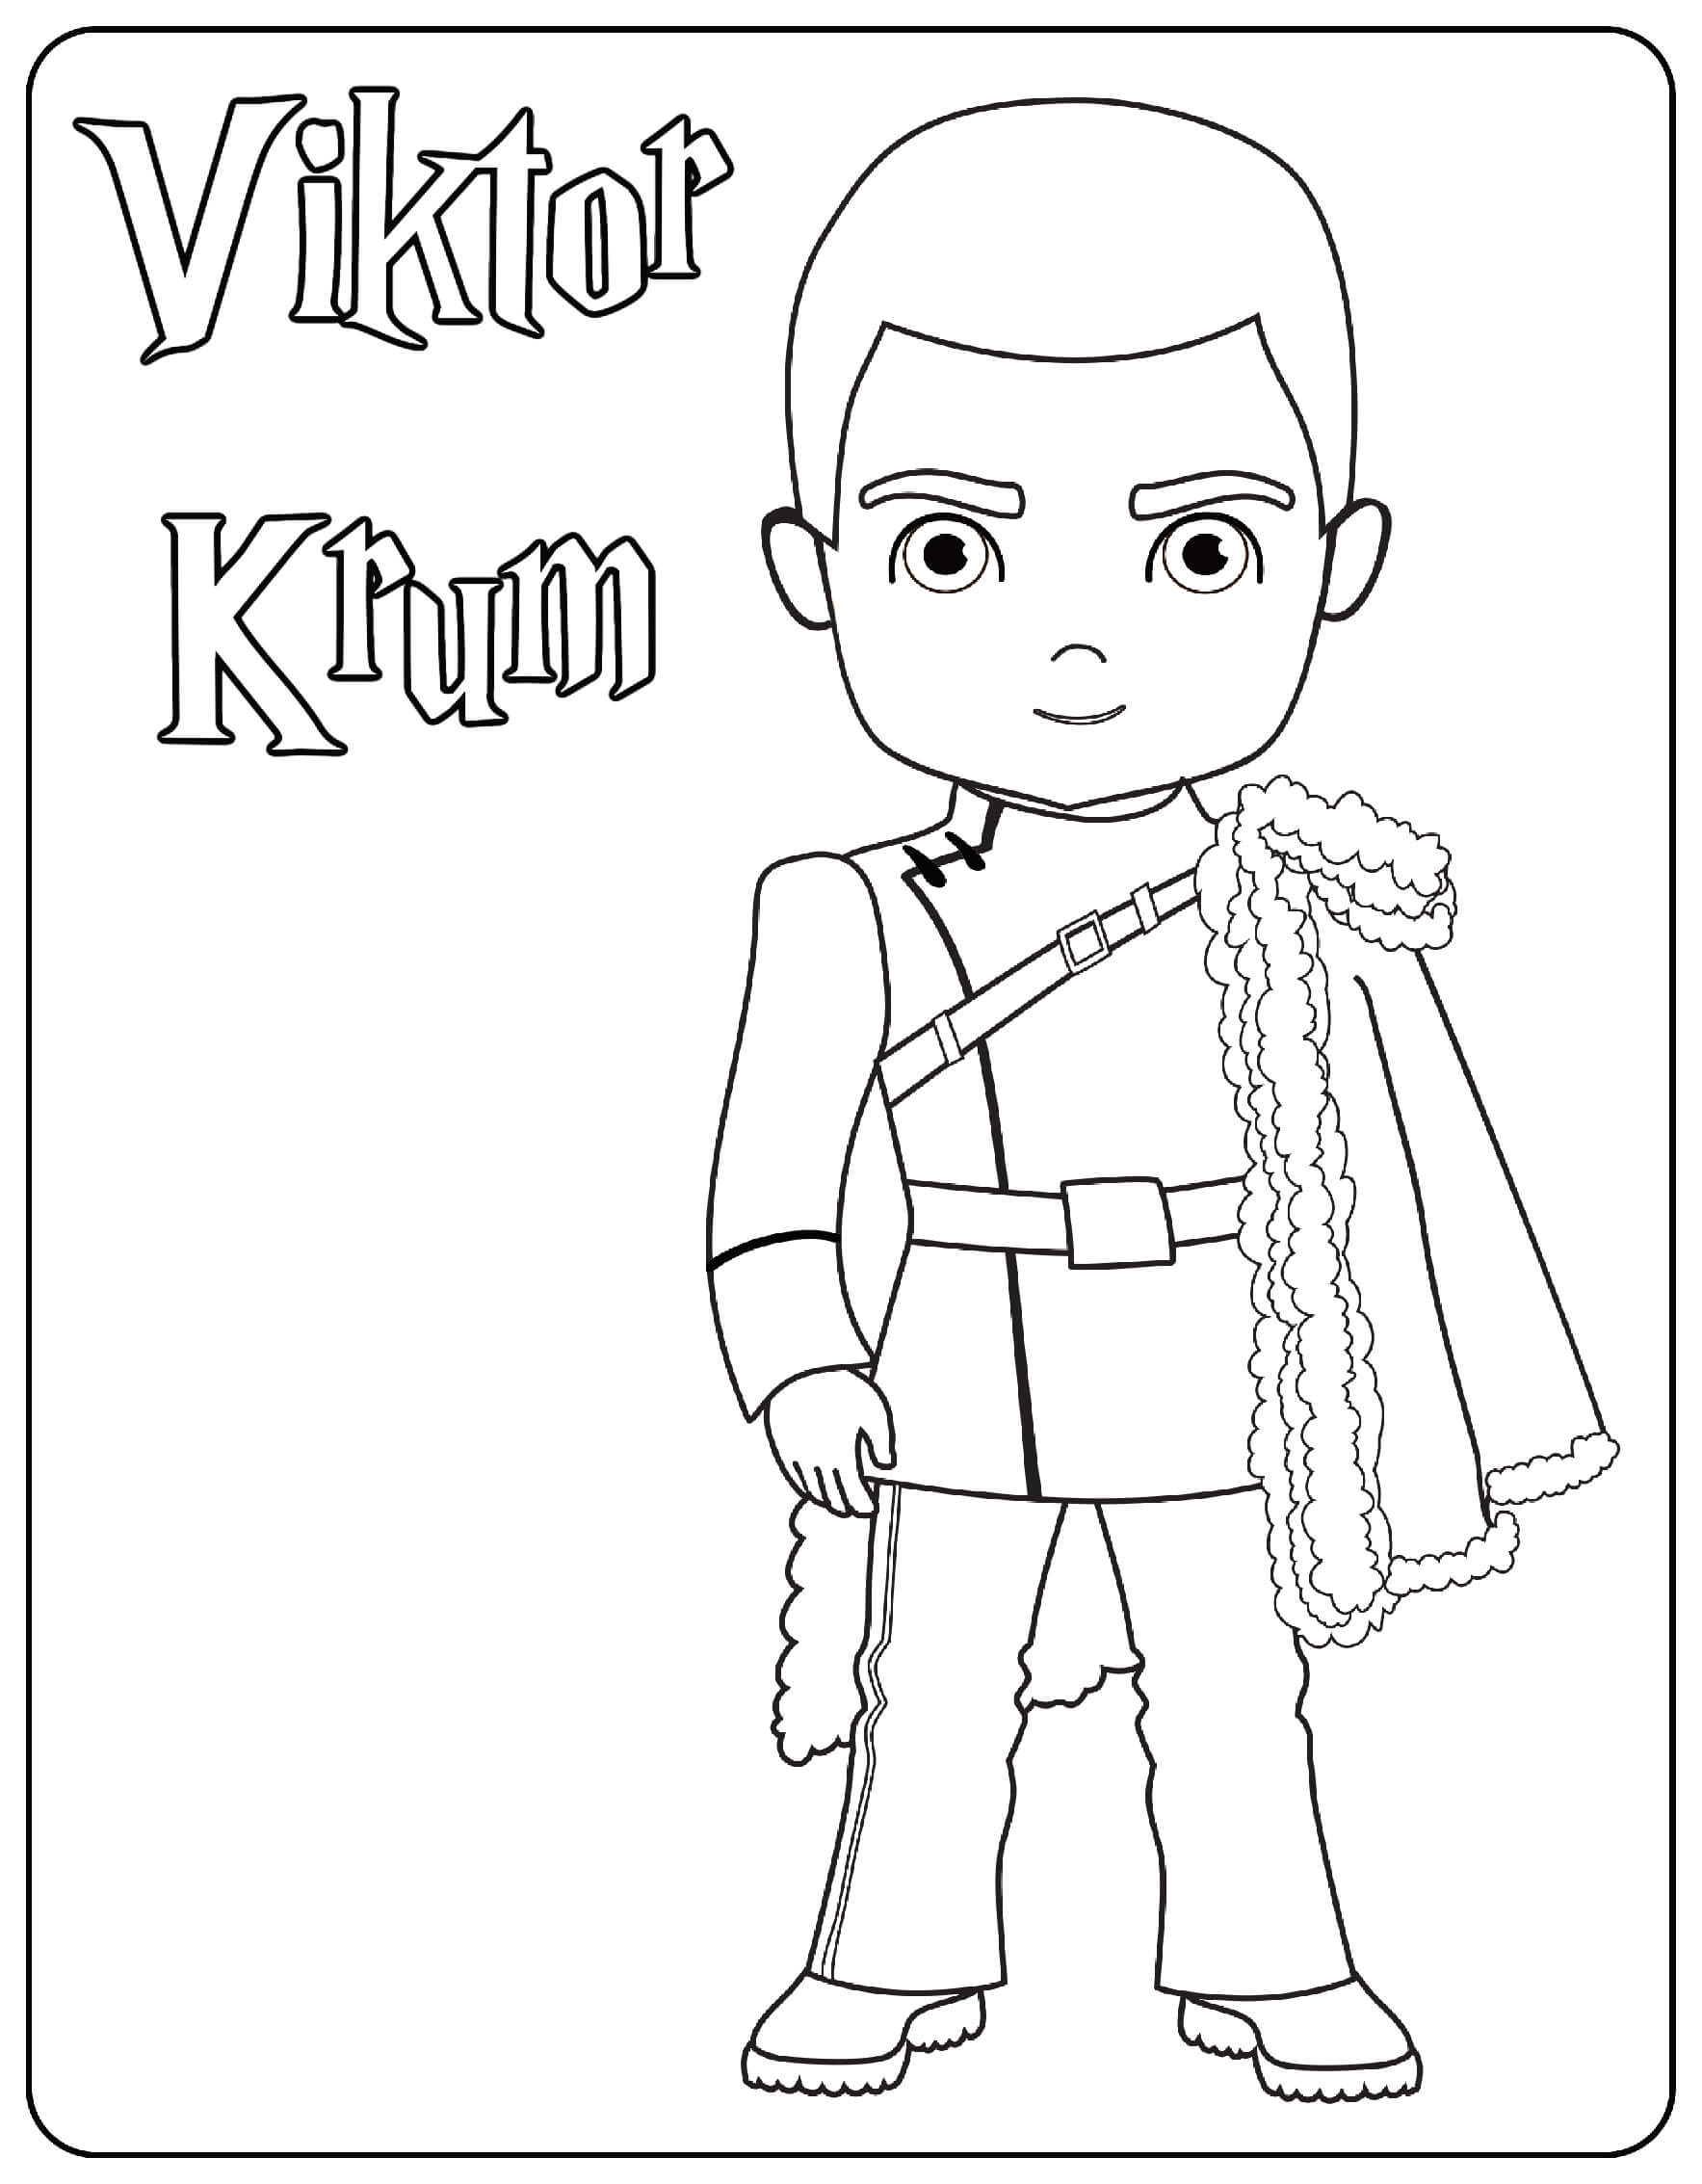 Viktor Krum Coloring Page